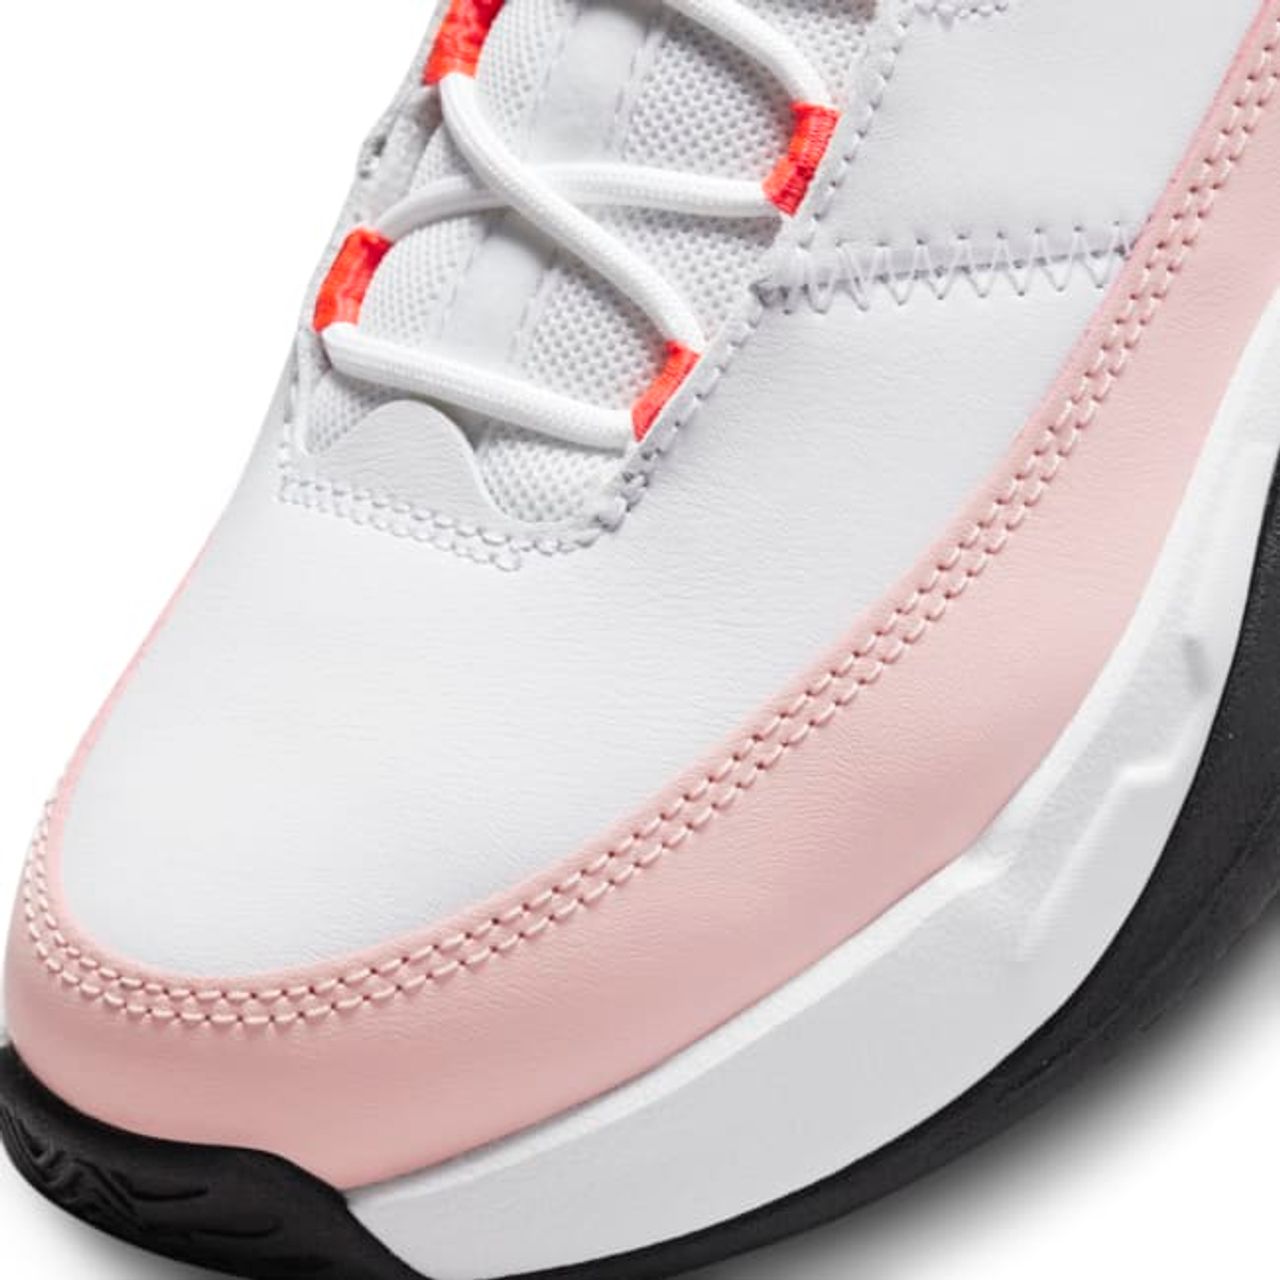 Jordan Max Aura 3 Schuh für ältere Kinder - Weiß